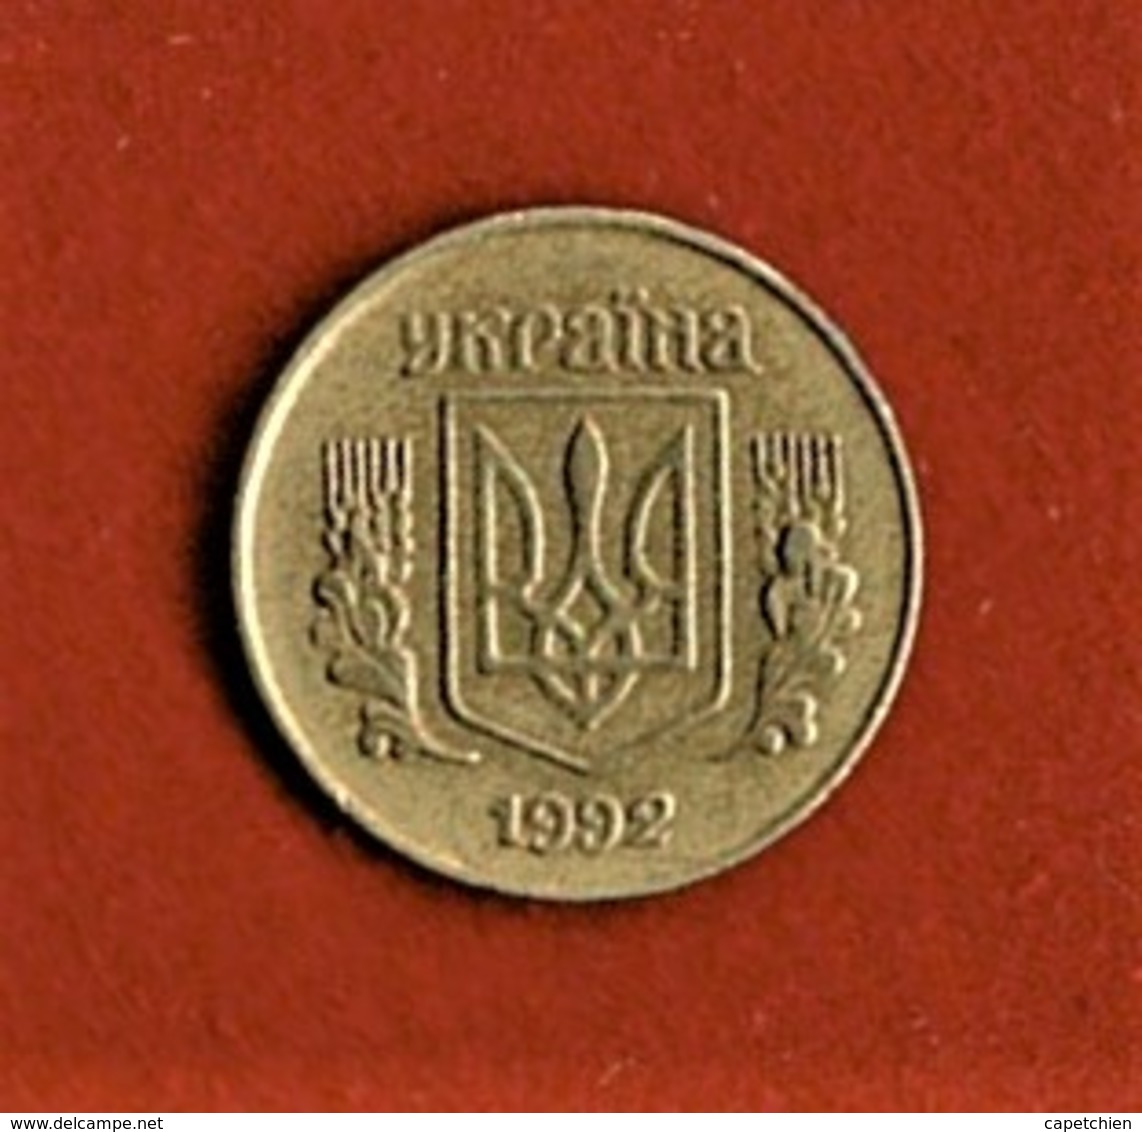 UKRAINE / 10 KOPECK / 1992 - Ukraine